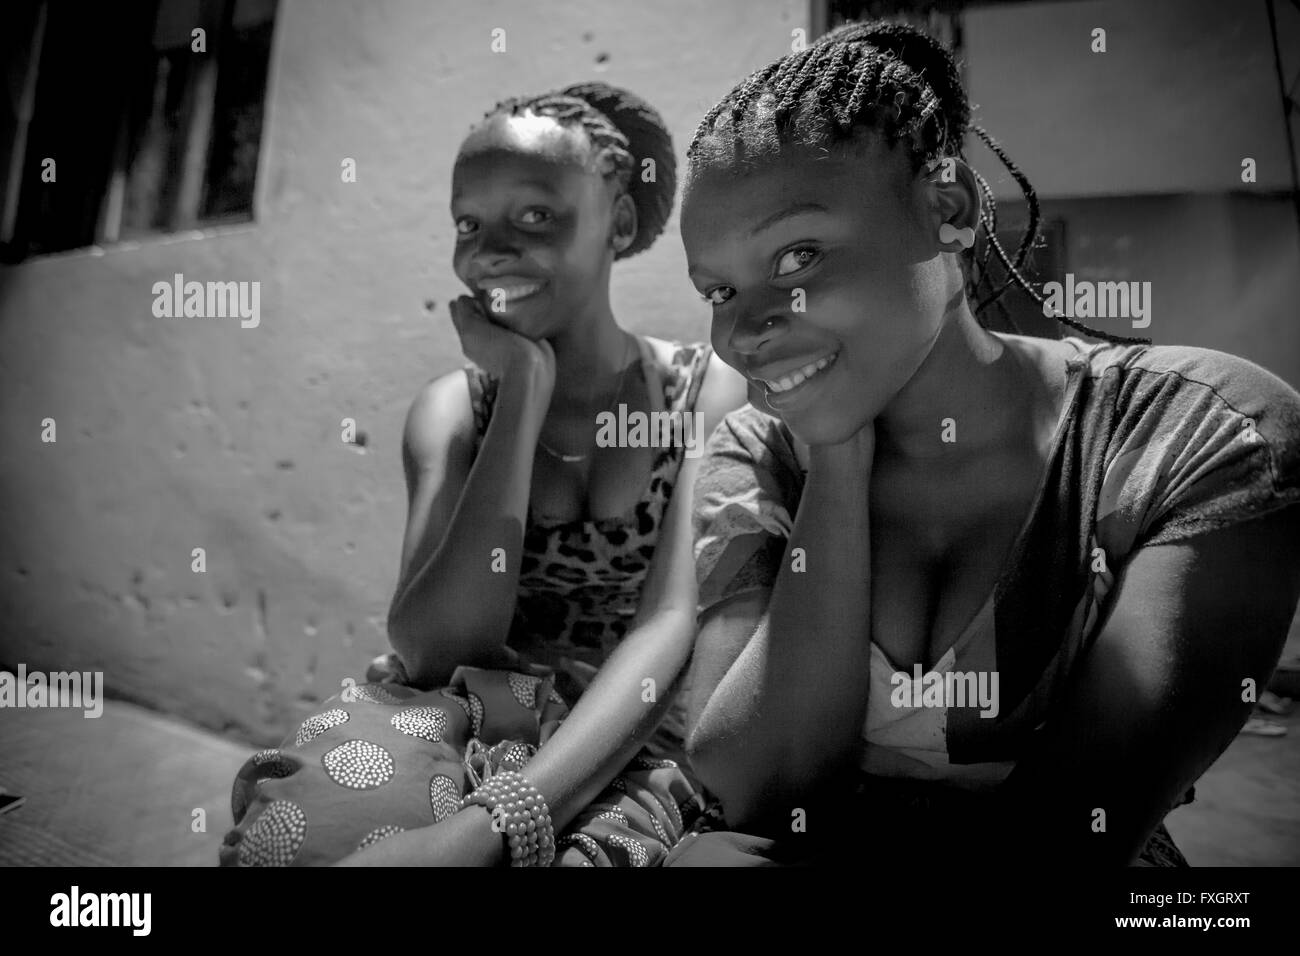 Mosambik, zwei Mädchen Freundschaft Lächeln und posieren, schwarz und weiß, B&W. Stockfoto